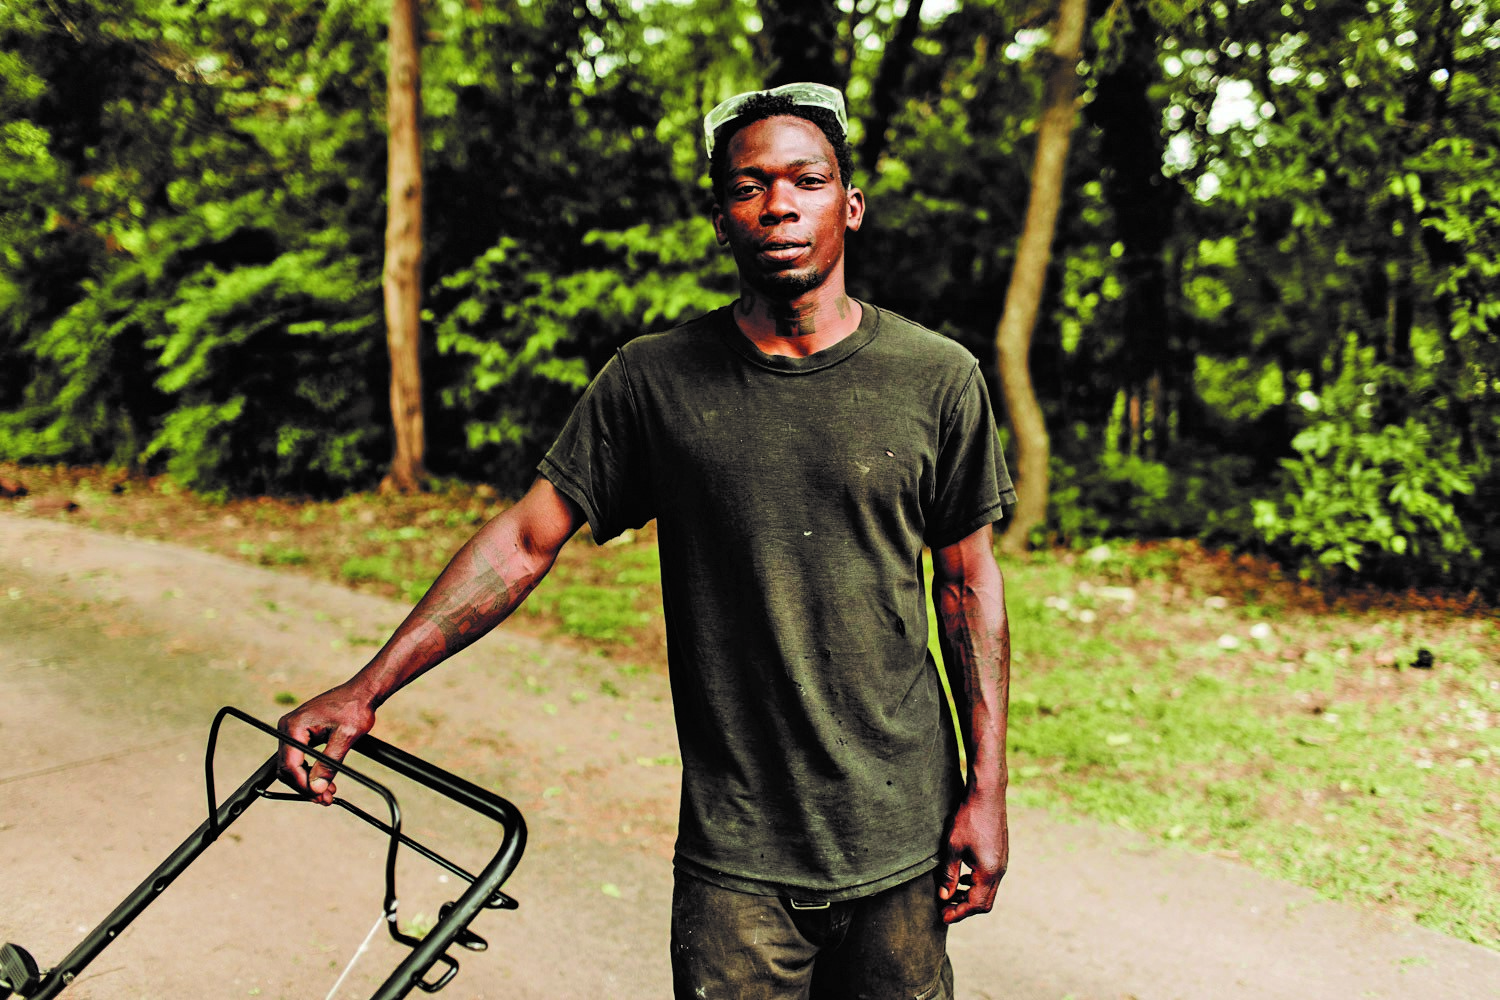 Miles of Freedom, beneficiaria de Cycle, a través de su empresa social sobre jardinería emplea y forma a personas que han estado en prisión.  